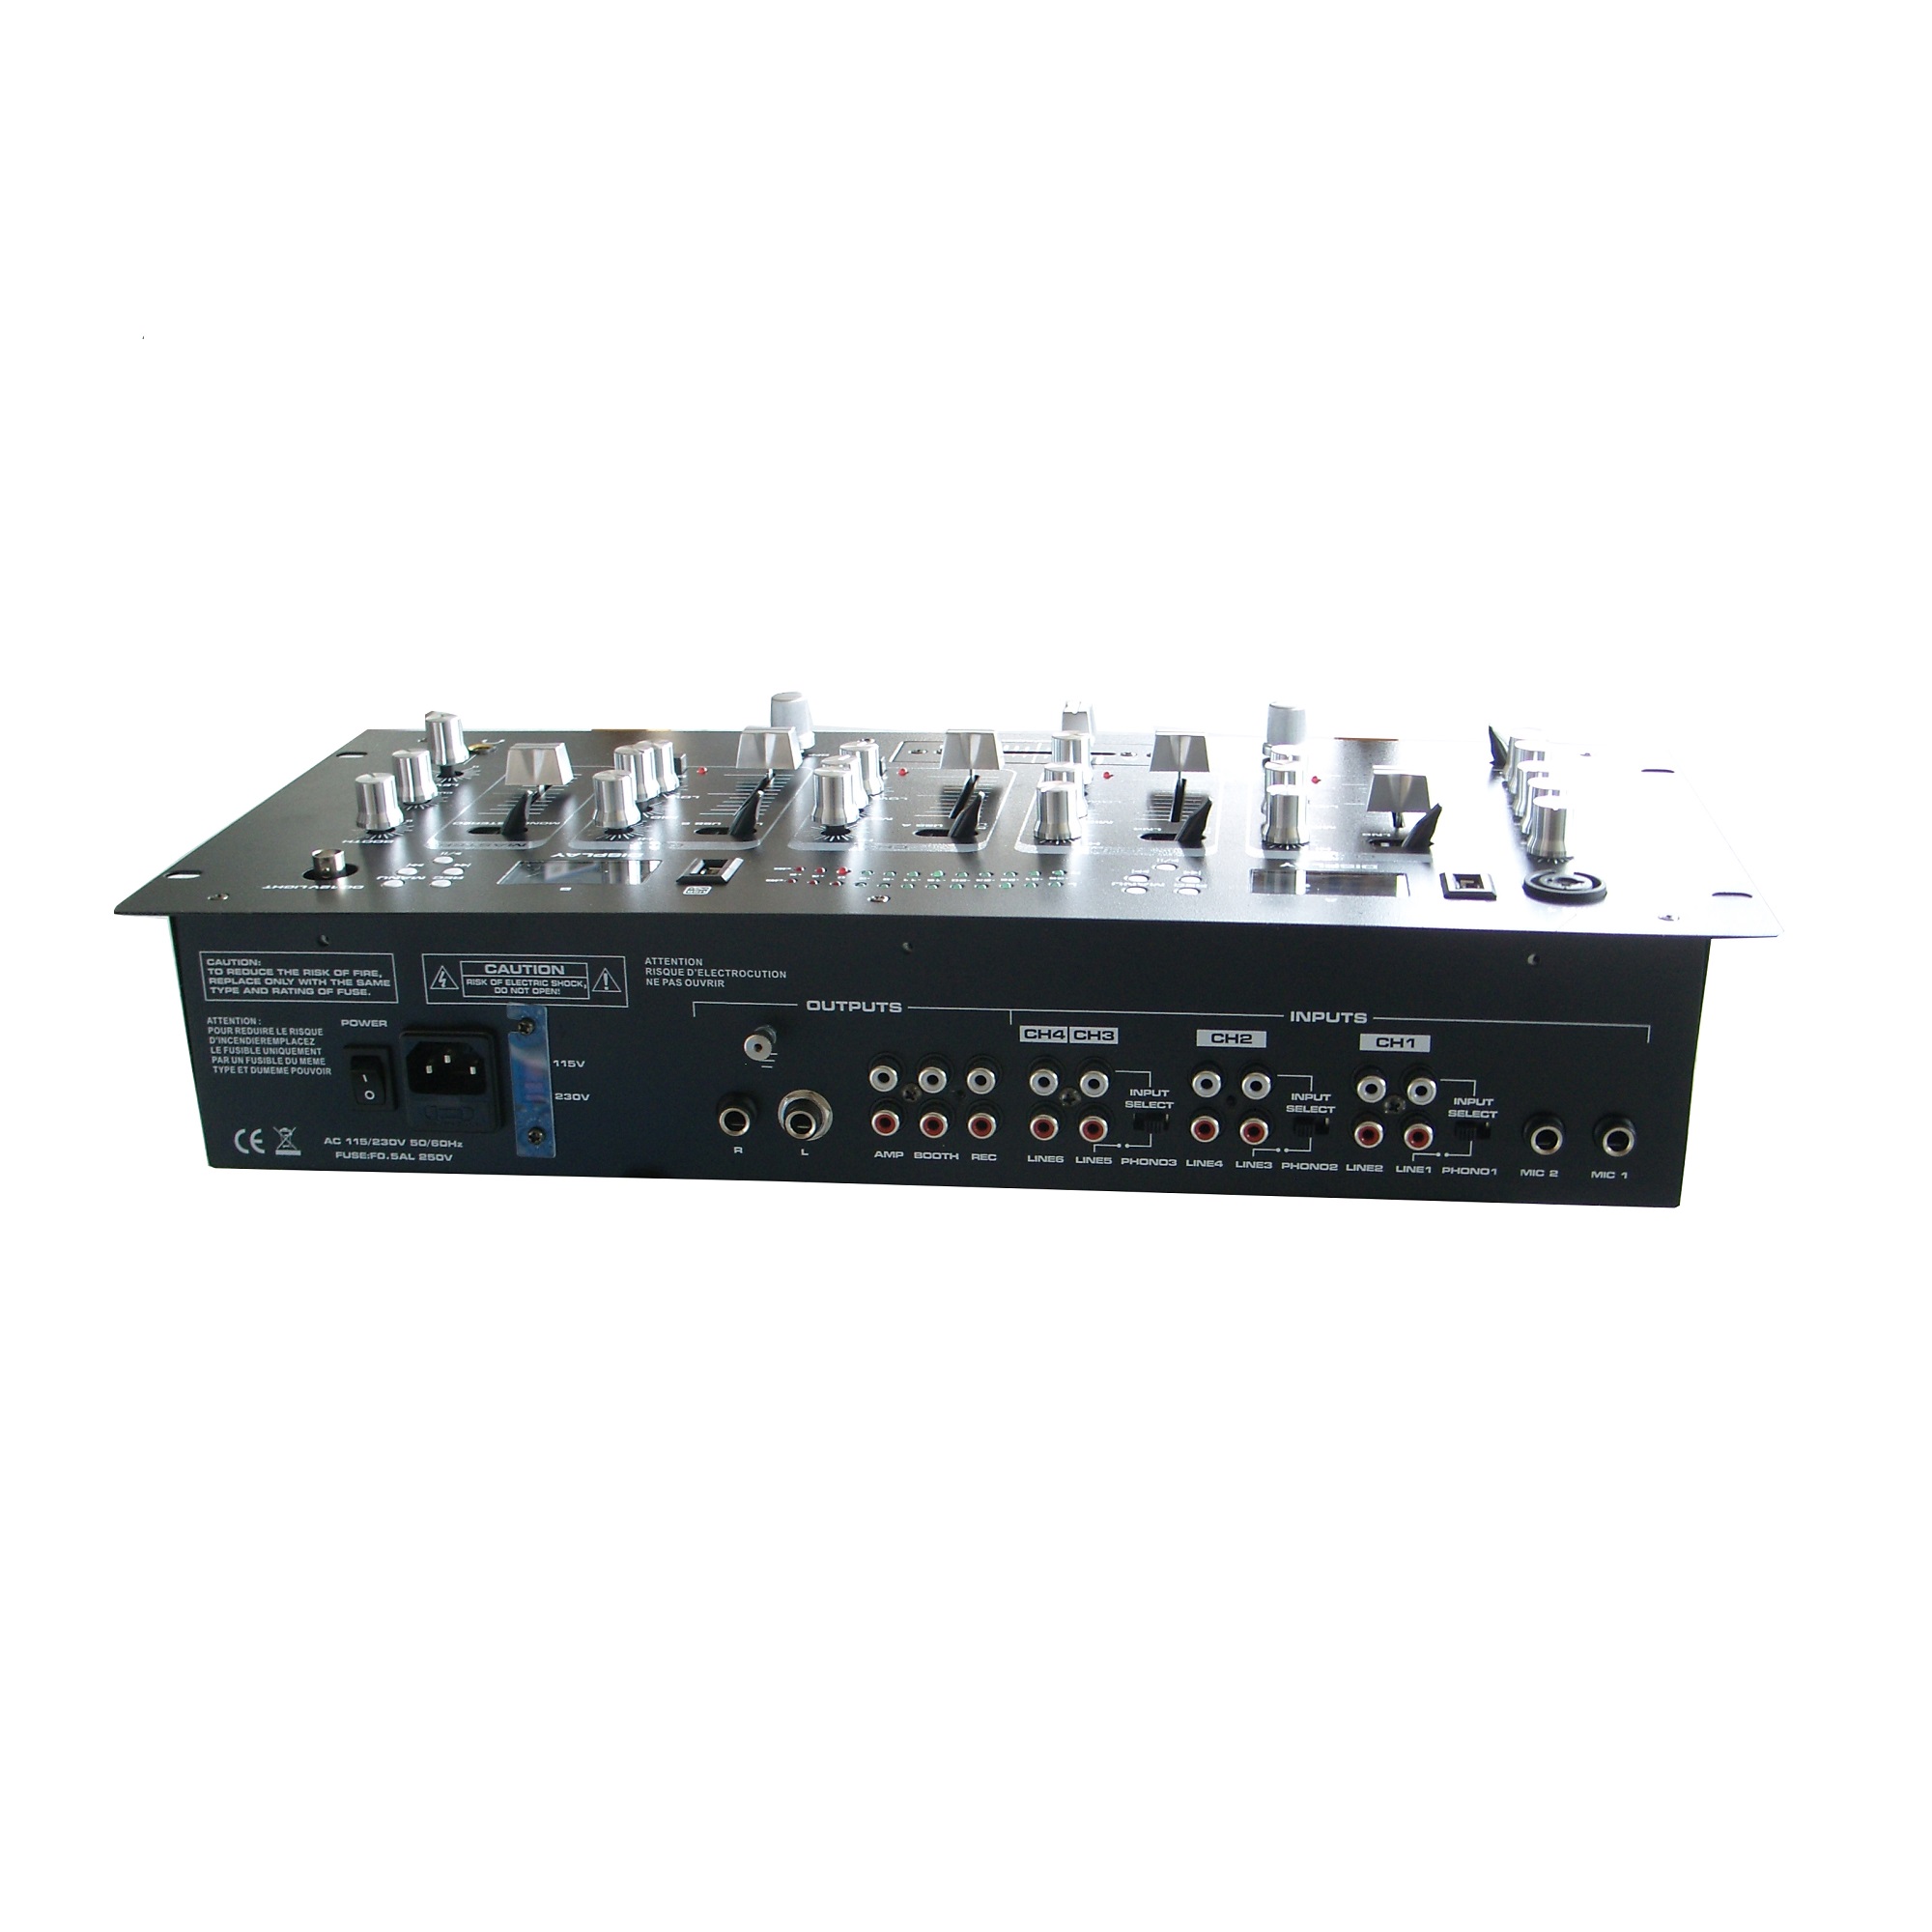 DJM134-2MP3 Reproductor de pantalla 2xMP3 4canalese stéreo 13entradas DJMIXER